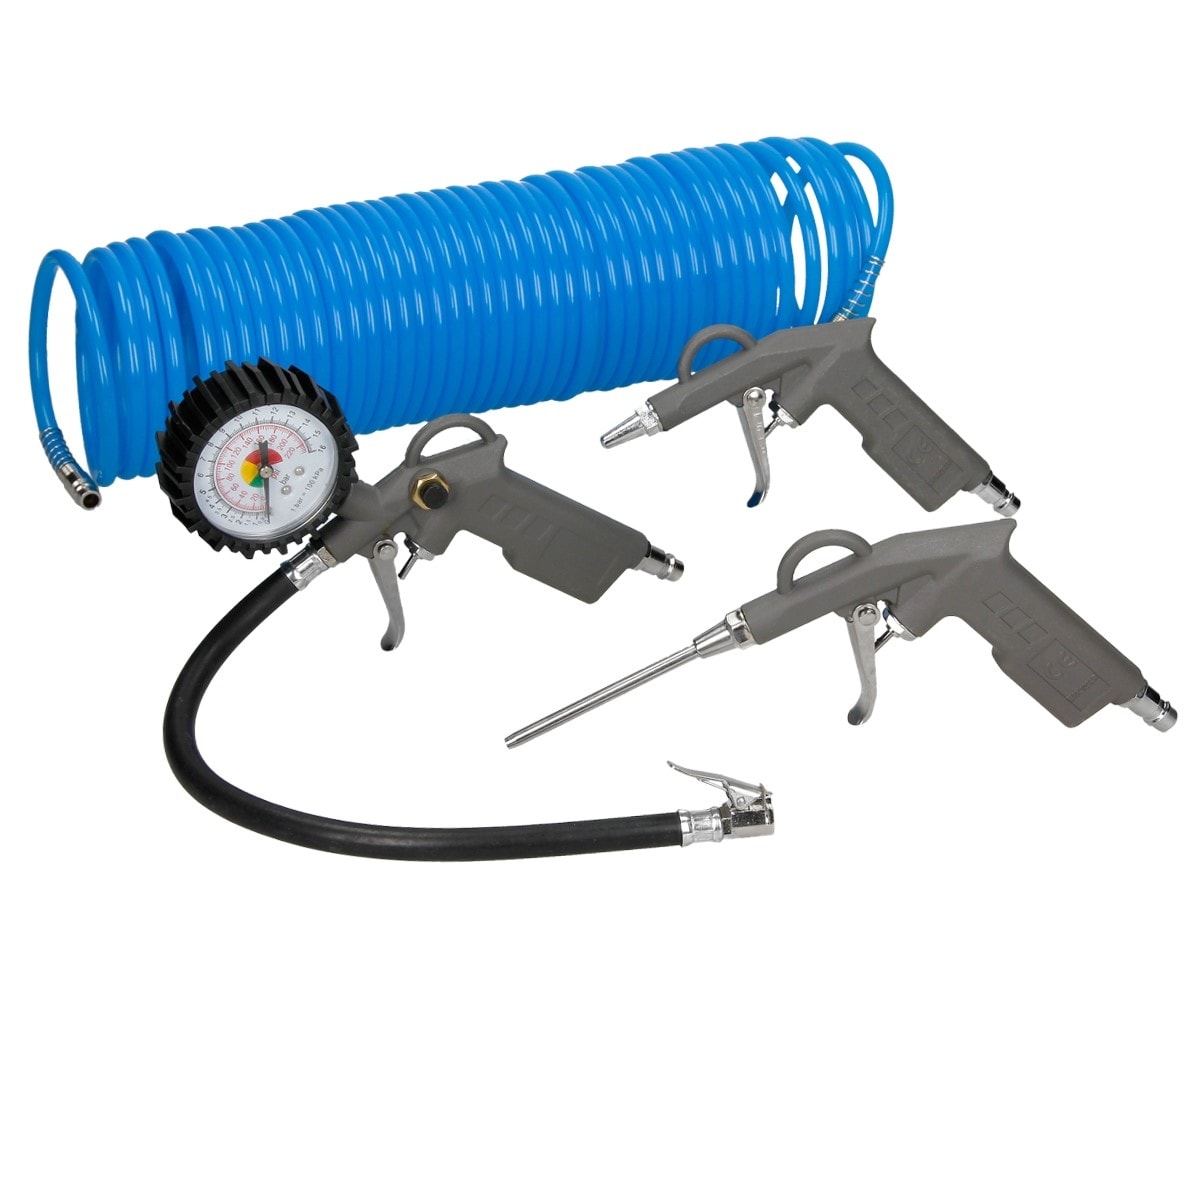 Compresseur- manometre-pistolet gonfleur - Équipement auto